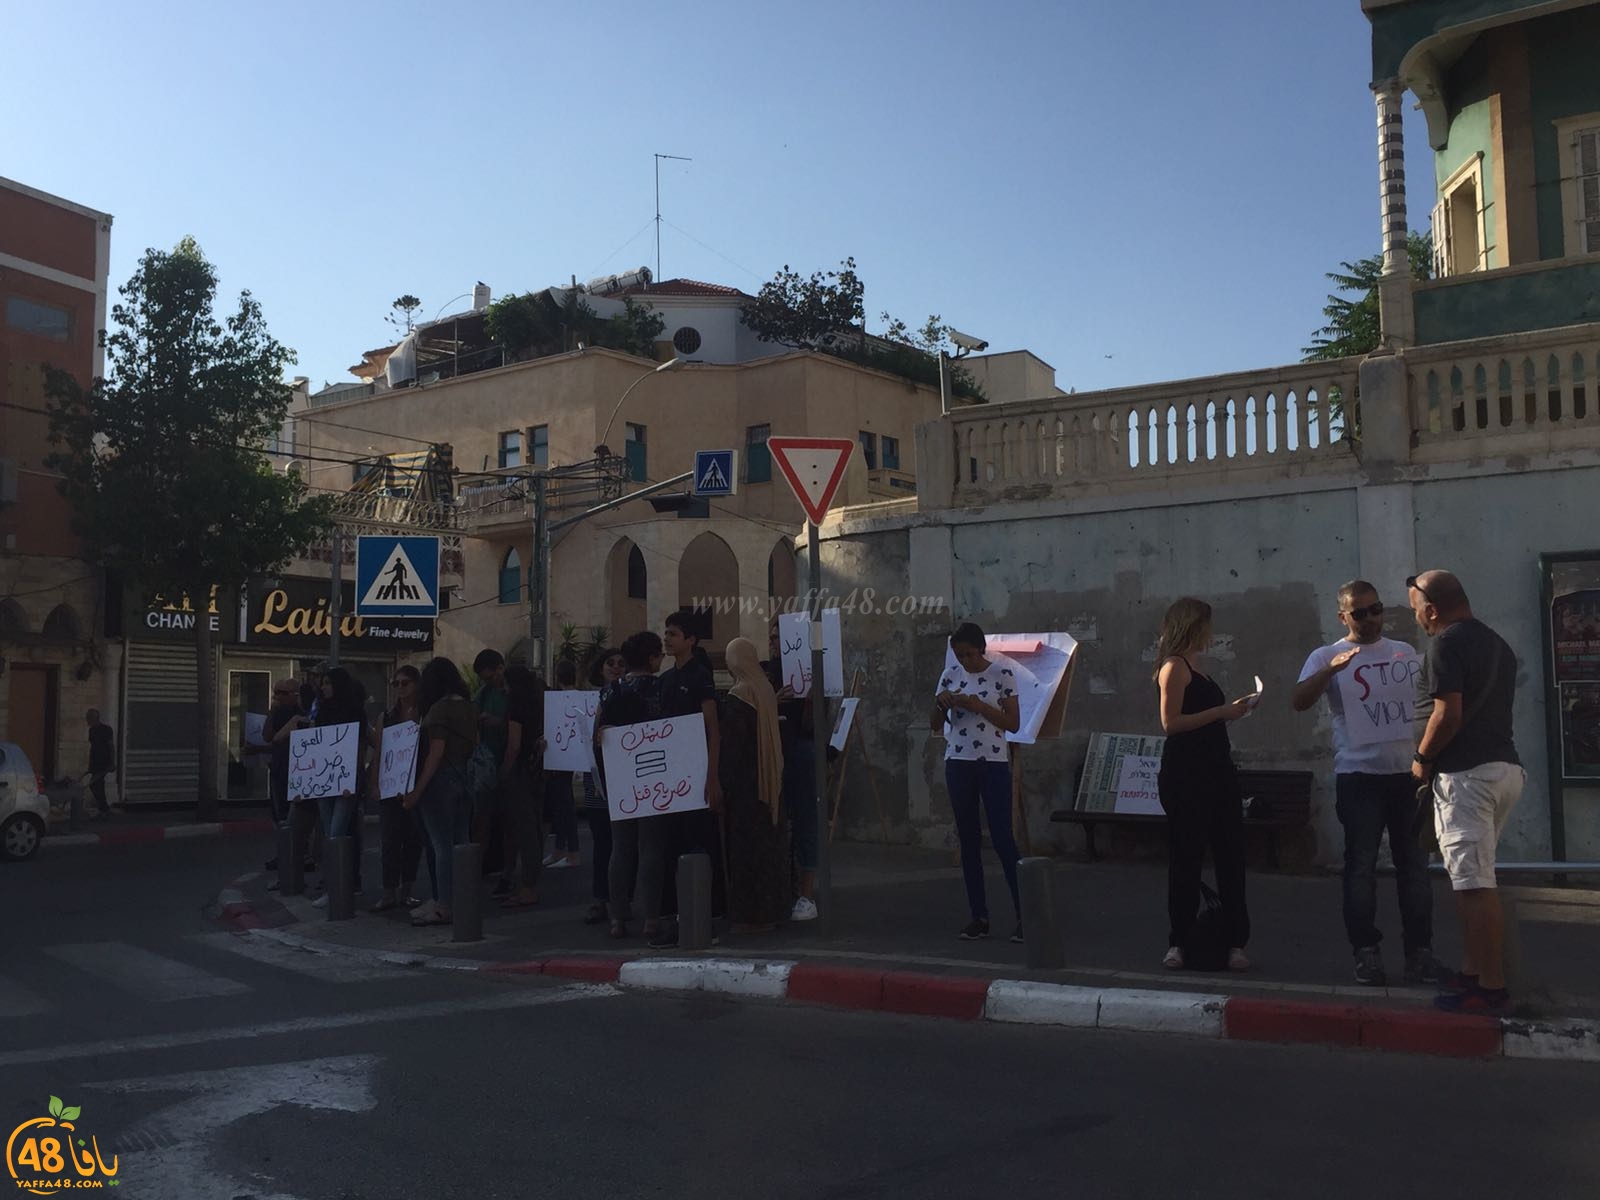  بالصور: مركز شبيبة يافتي يُنظم وقفة احتجاجاً على العنف والاجرام بيافا